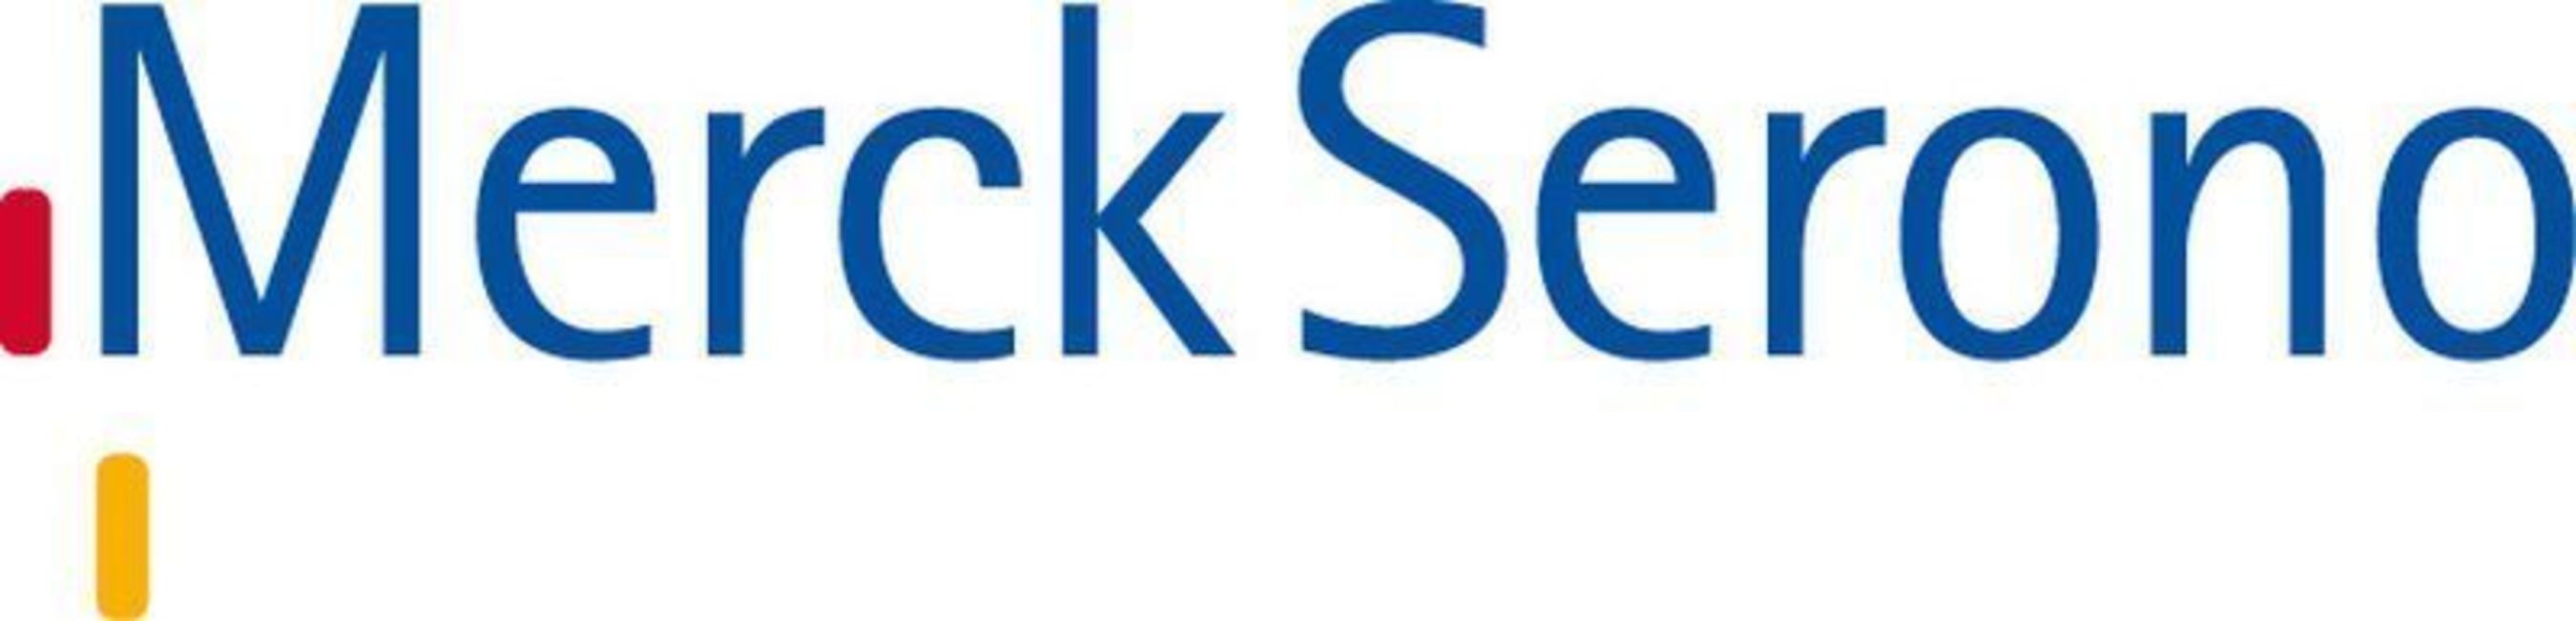 MerckSerono Logo (PRNewsFoto/Merck Serono)